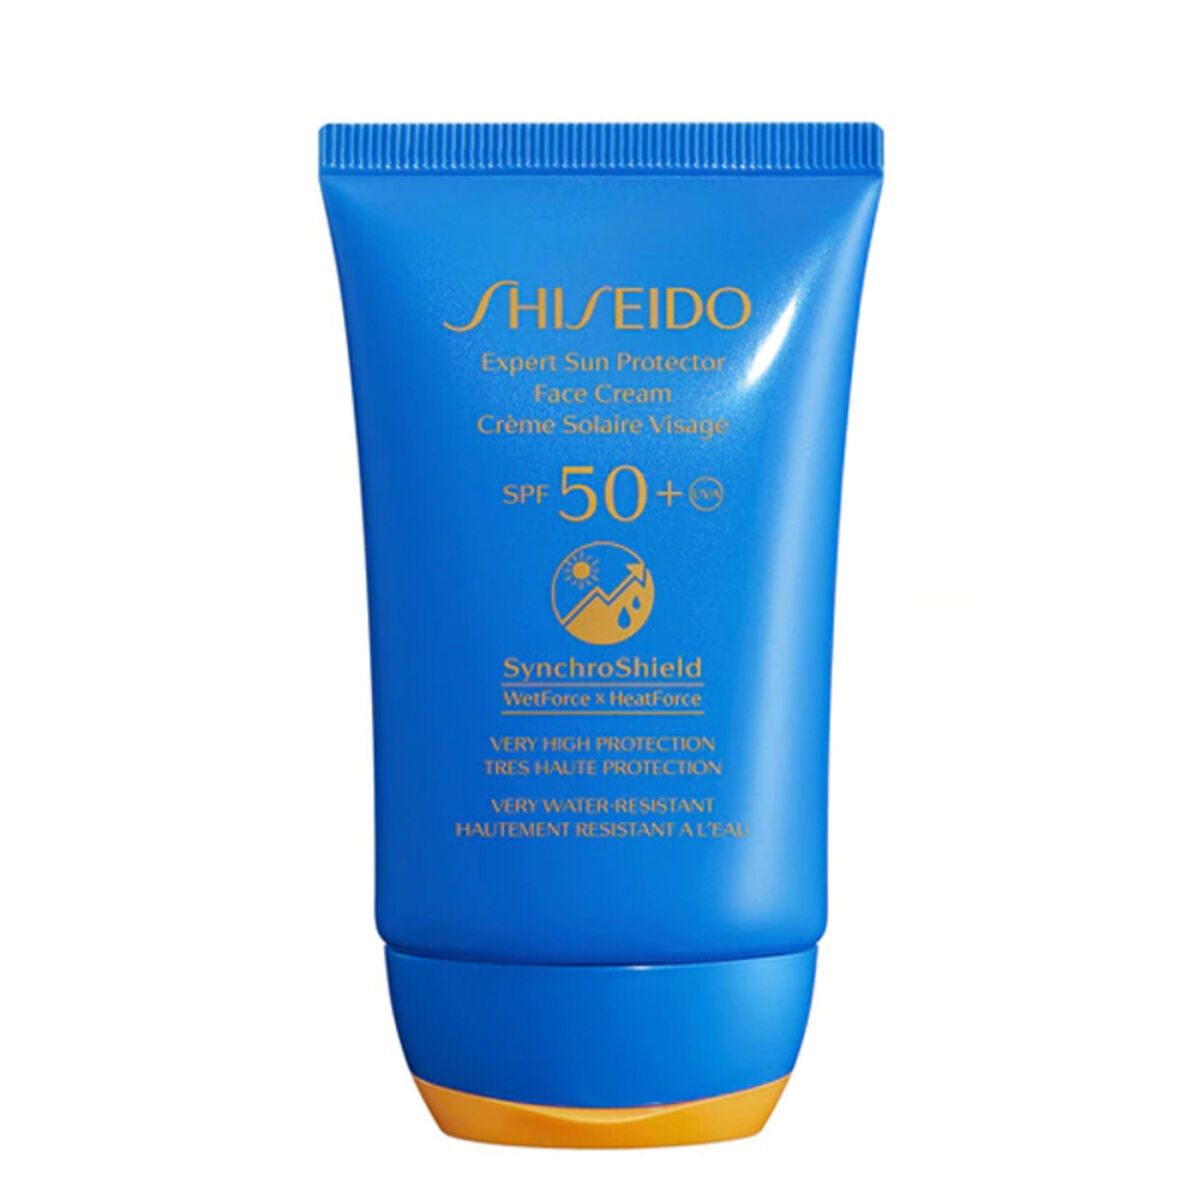 Crema solare viso Shiseido Expert Sun Protector Spf 50